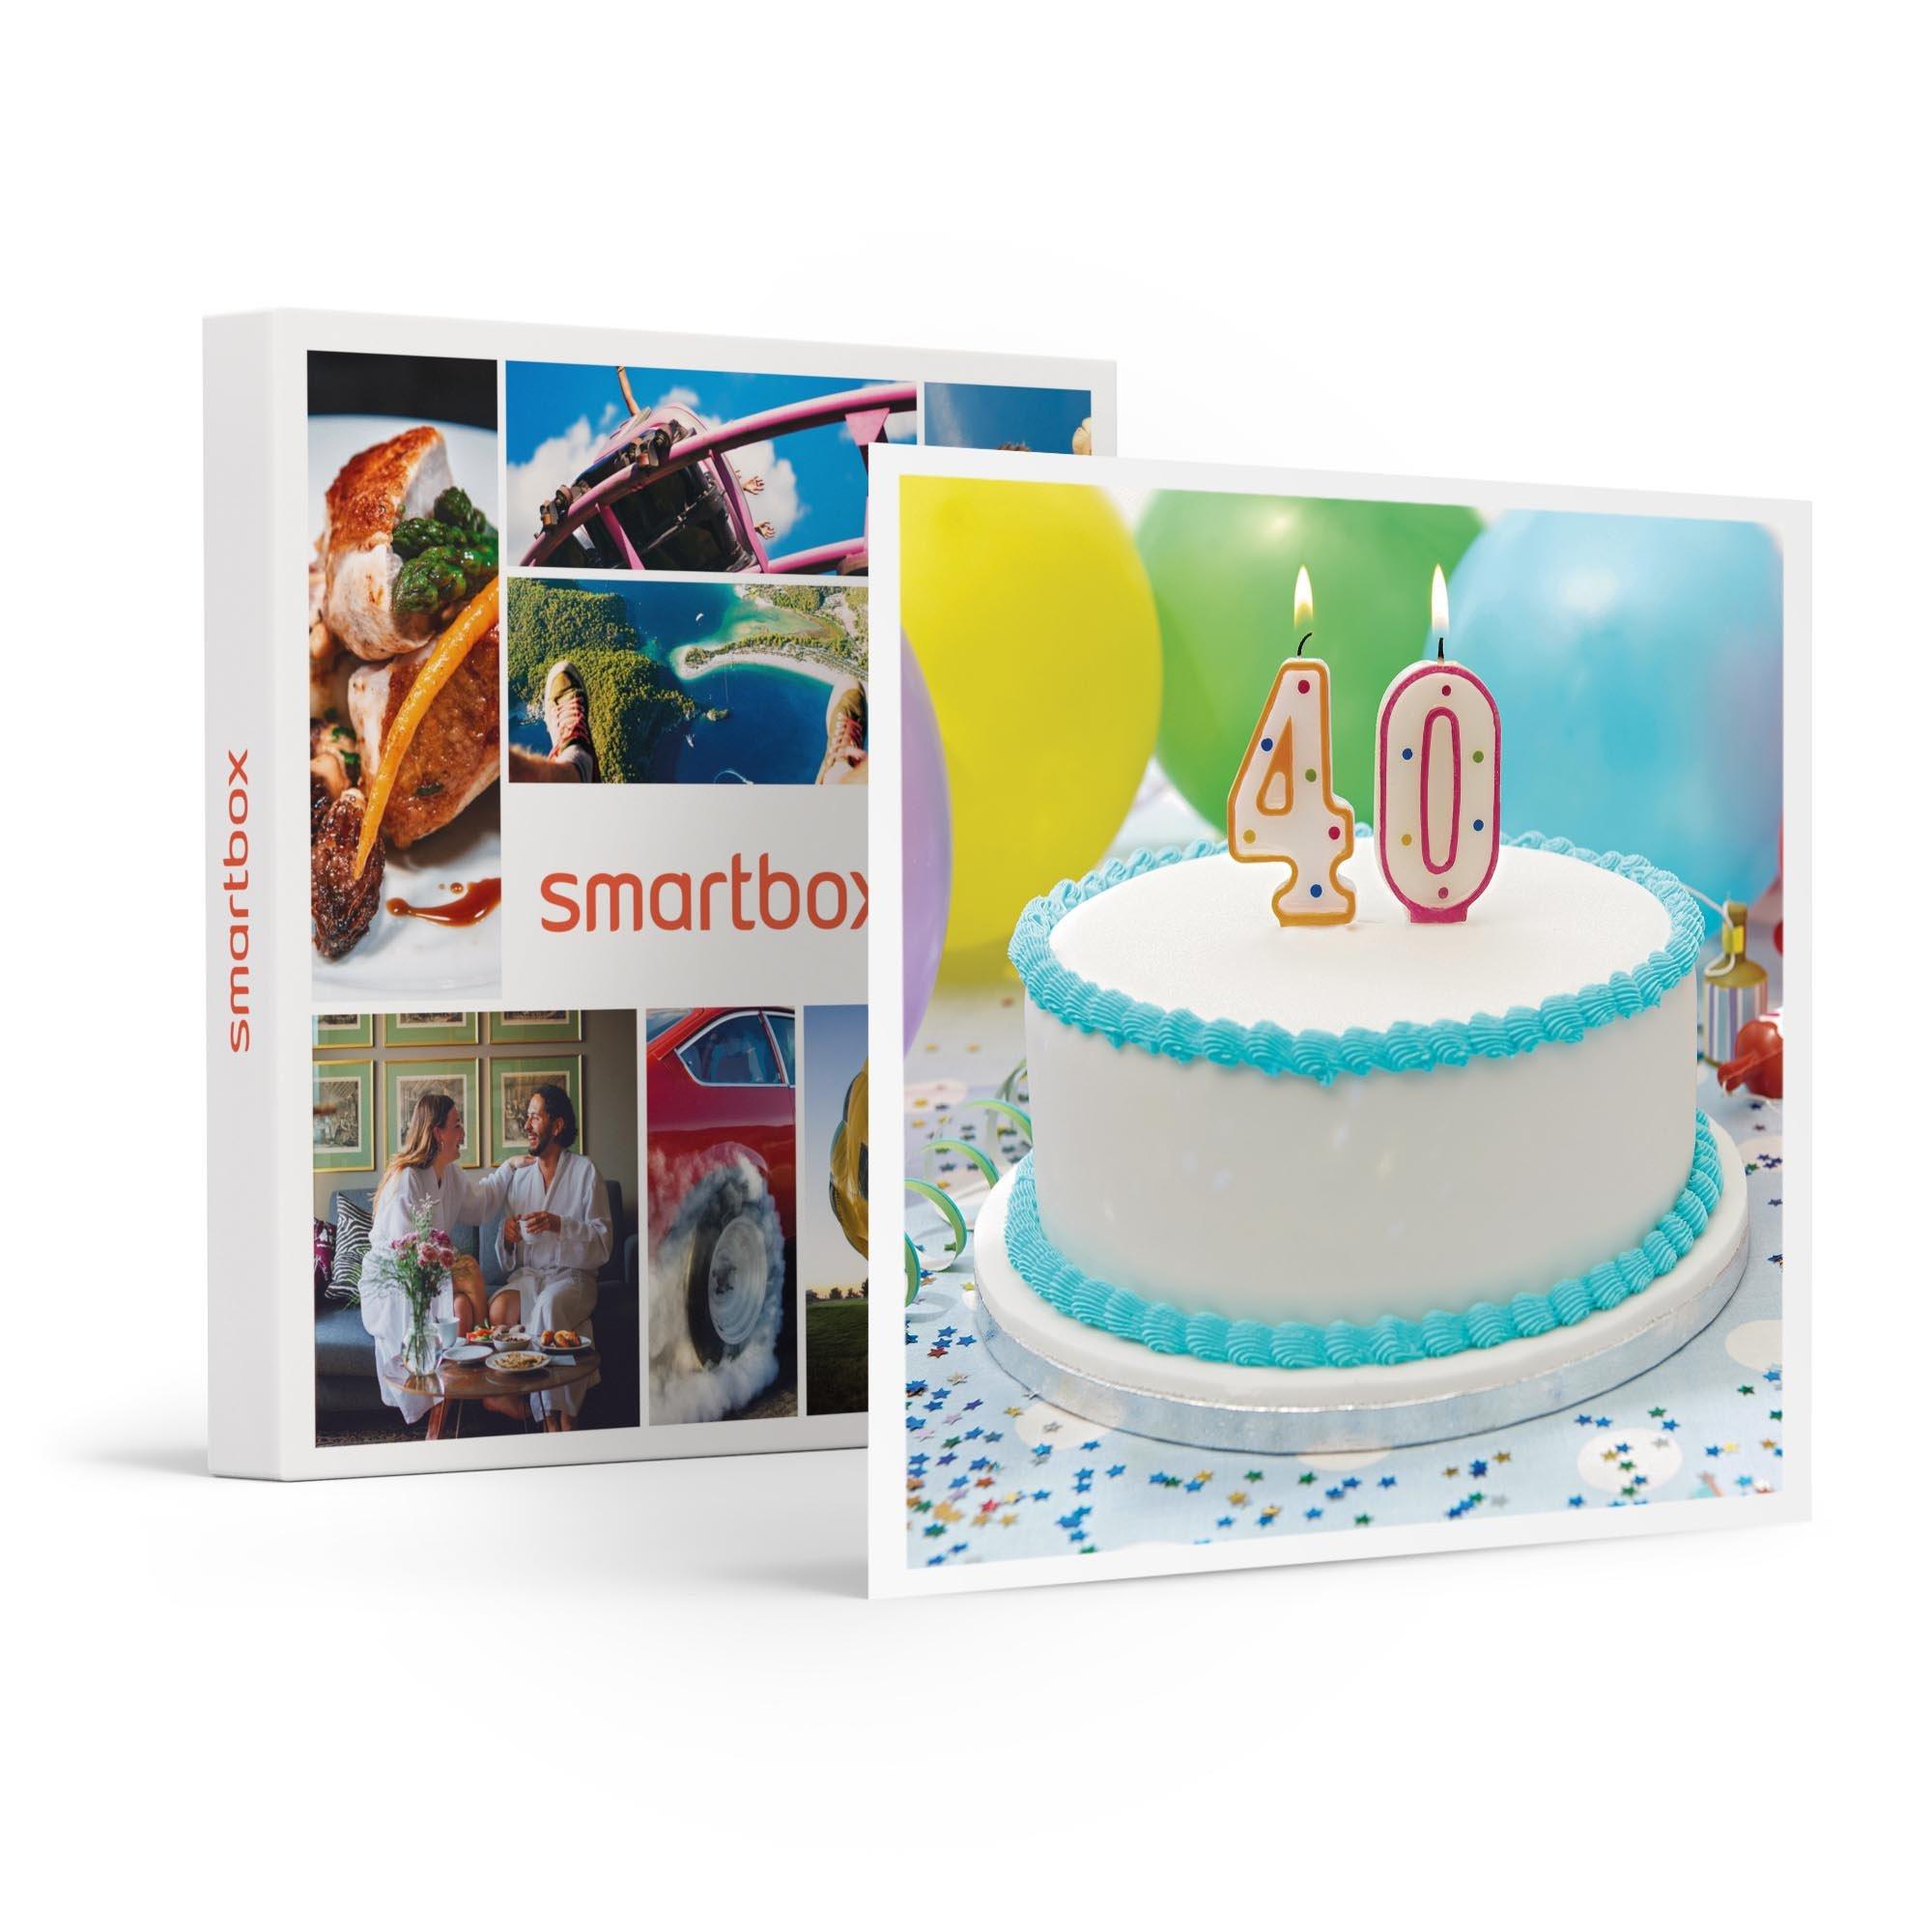 Smartbox Joyeux Anniversaire : Séjours, Soupers, Séances Bien-être Ou Aventure Pour Fêter Vos 40 Ans - Coffret Cadeau Unisexe